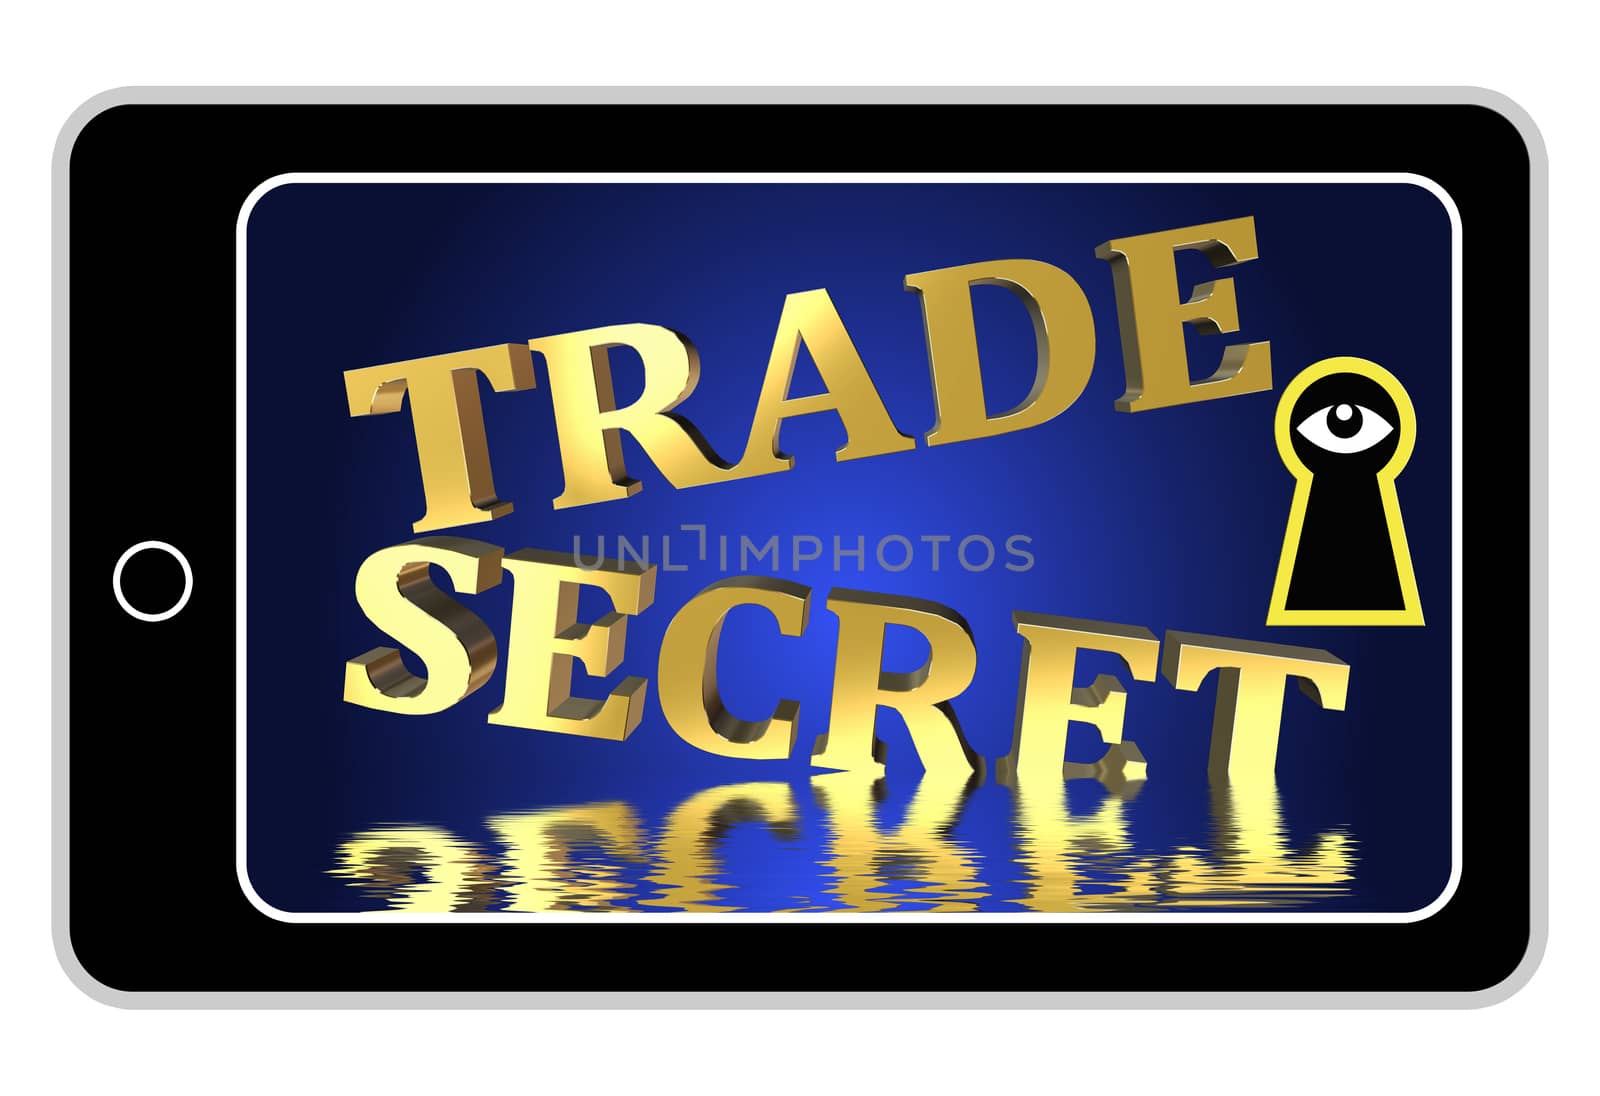  Trade Secrets at Stake by Bambara